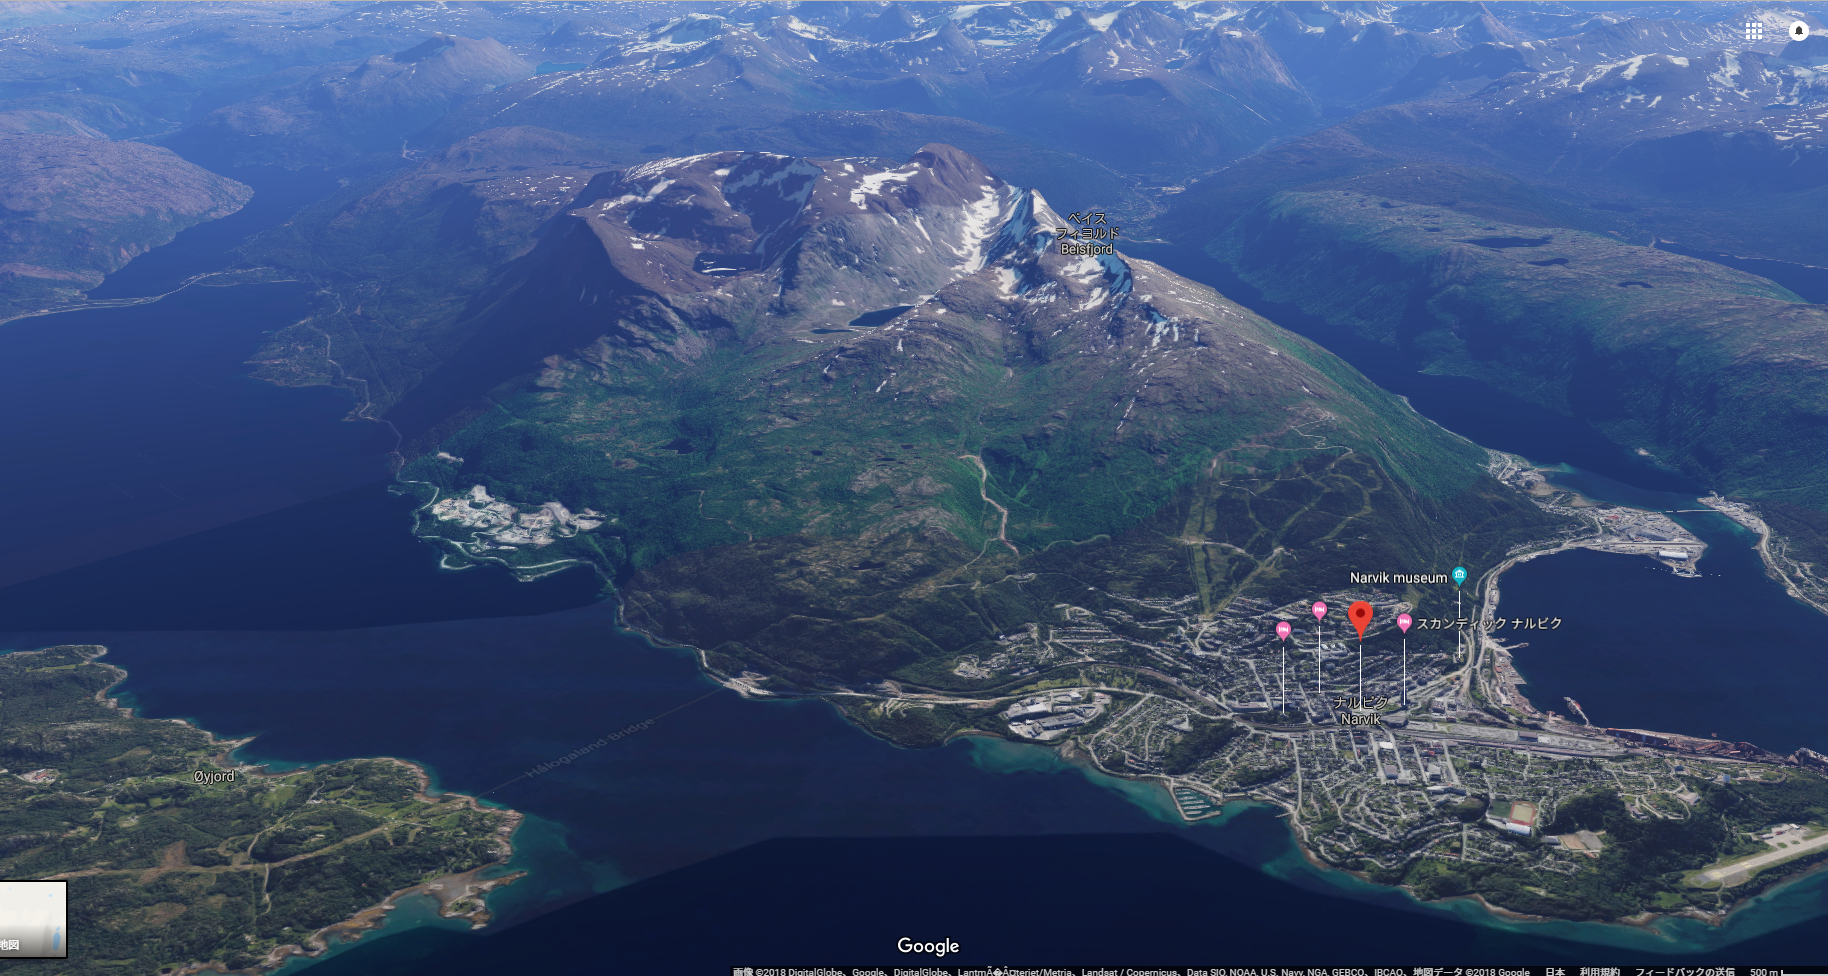 Moat San の自由帳 Google Map で Bfv の戦場に行ってみた Fjell 652 ノルウェー